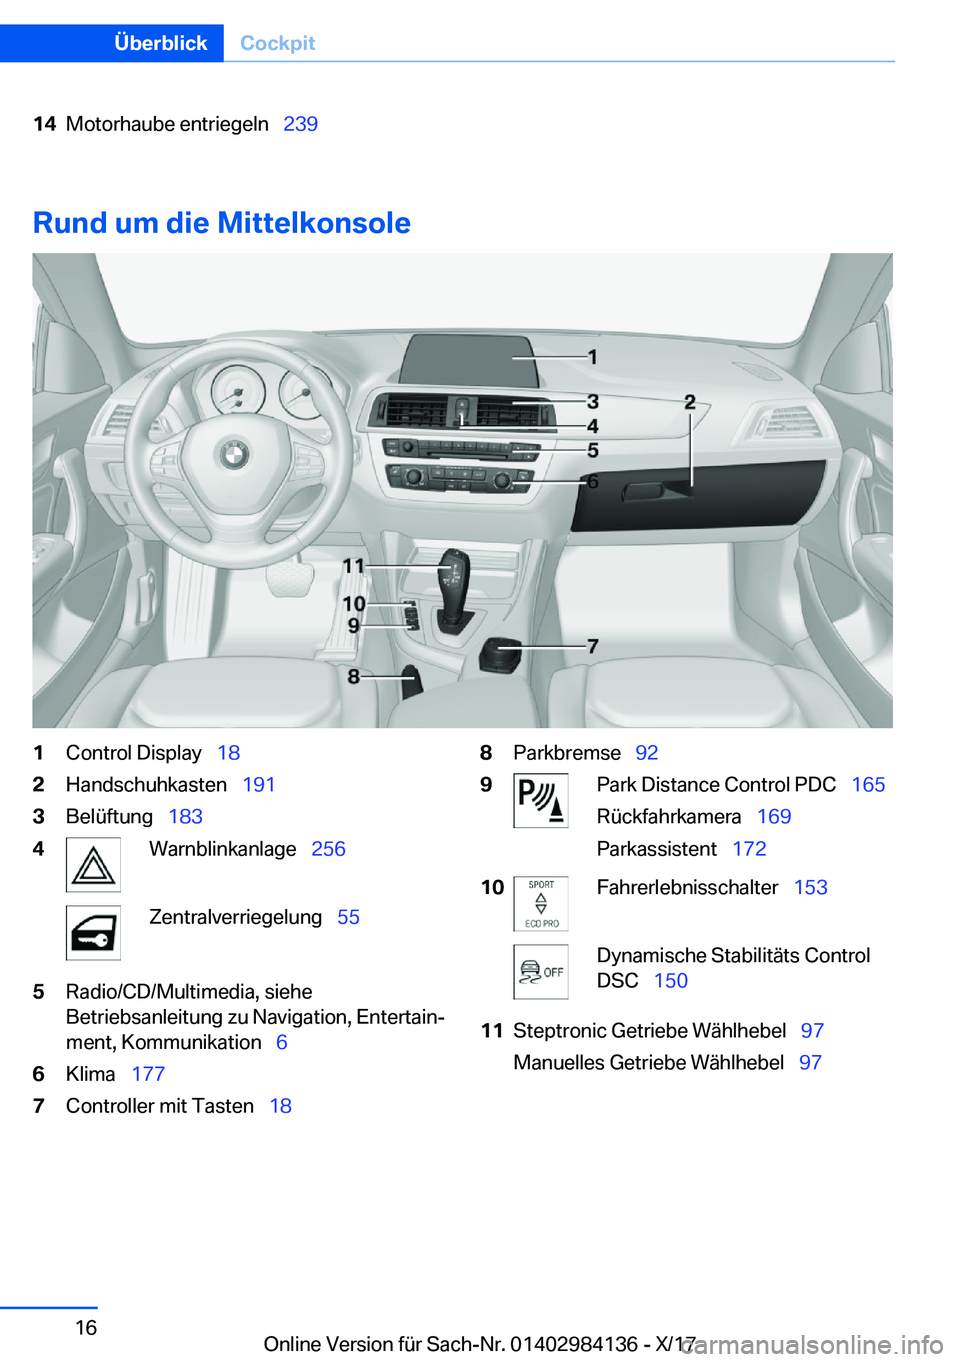 BMW 2 SERIES COUPE 2018  Betriebsanleitungen (in German) �1�4�M�o�t�o�r�h�a�u�b�e� �e�n�t�r�i�e�g�e�l�n\_�2�3�9
�R�u�n�d��u�m��d�i�e��M�i�t�t�e�l�k�o�n�s�o�l�e
�1�C�o�n�t�r�o�l� �D�i�s�p�l�a�y\_�1�8�2�H�a�n�d�s�c�h�u�h�k�a�s�t�e�n\_ �1�9�1�3�B�e�l�